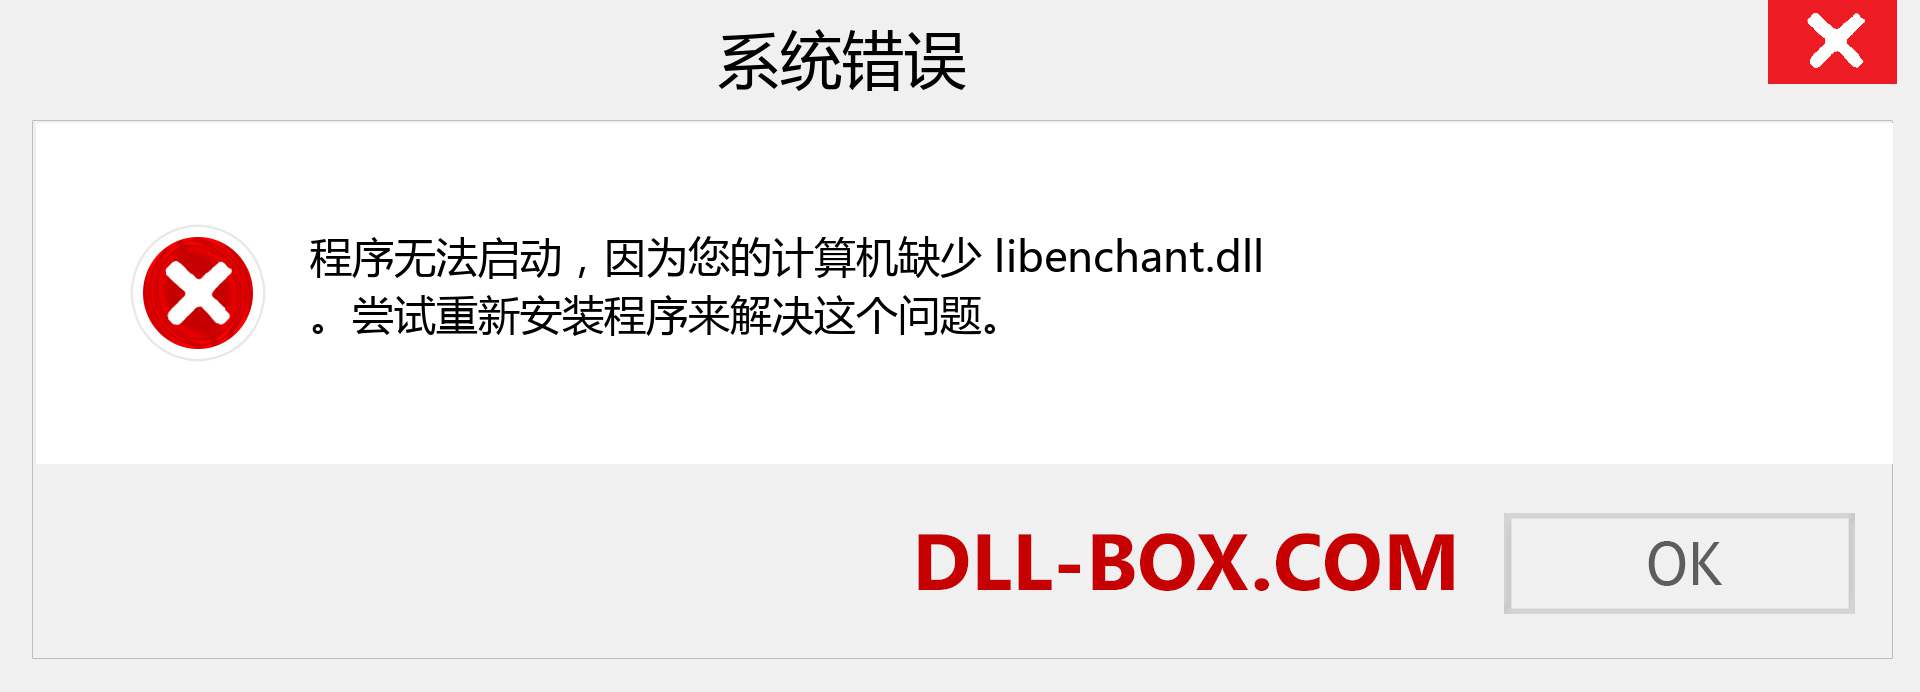 libenchant.dll 文件丢失？。 适用于 Windows 7、8、10 的下载 - 修复 Windows、照片、图像上的 libenchant dll 丢失错误